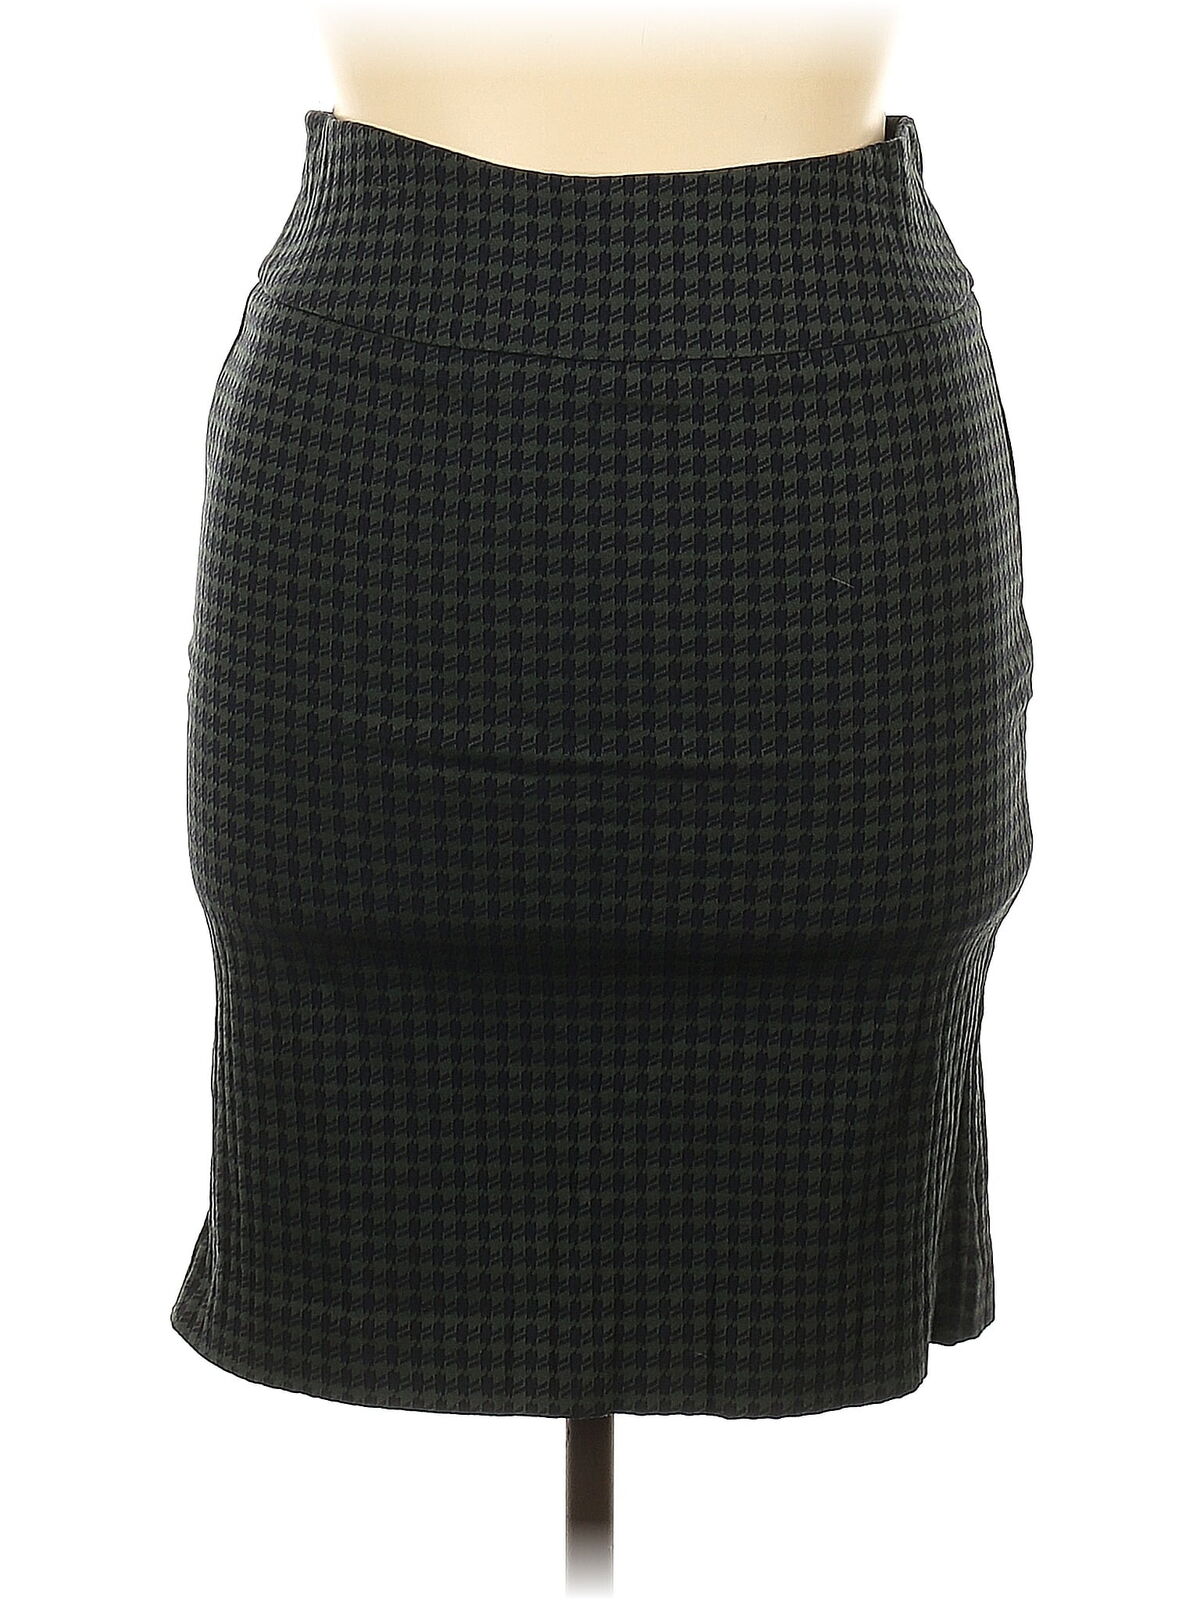 Margaret M Women Black Formal Skirt XL - image 1